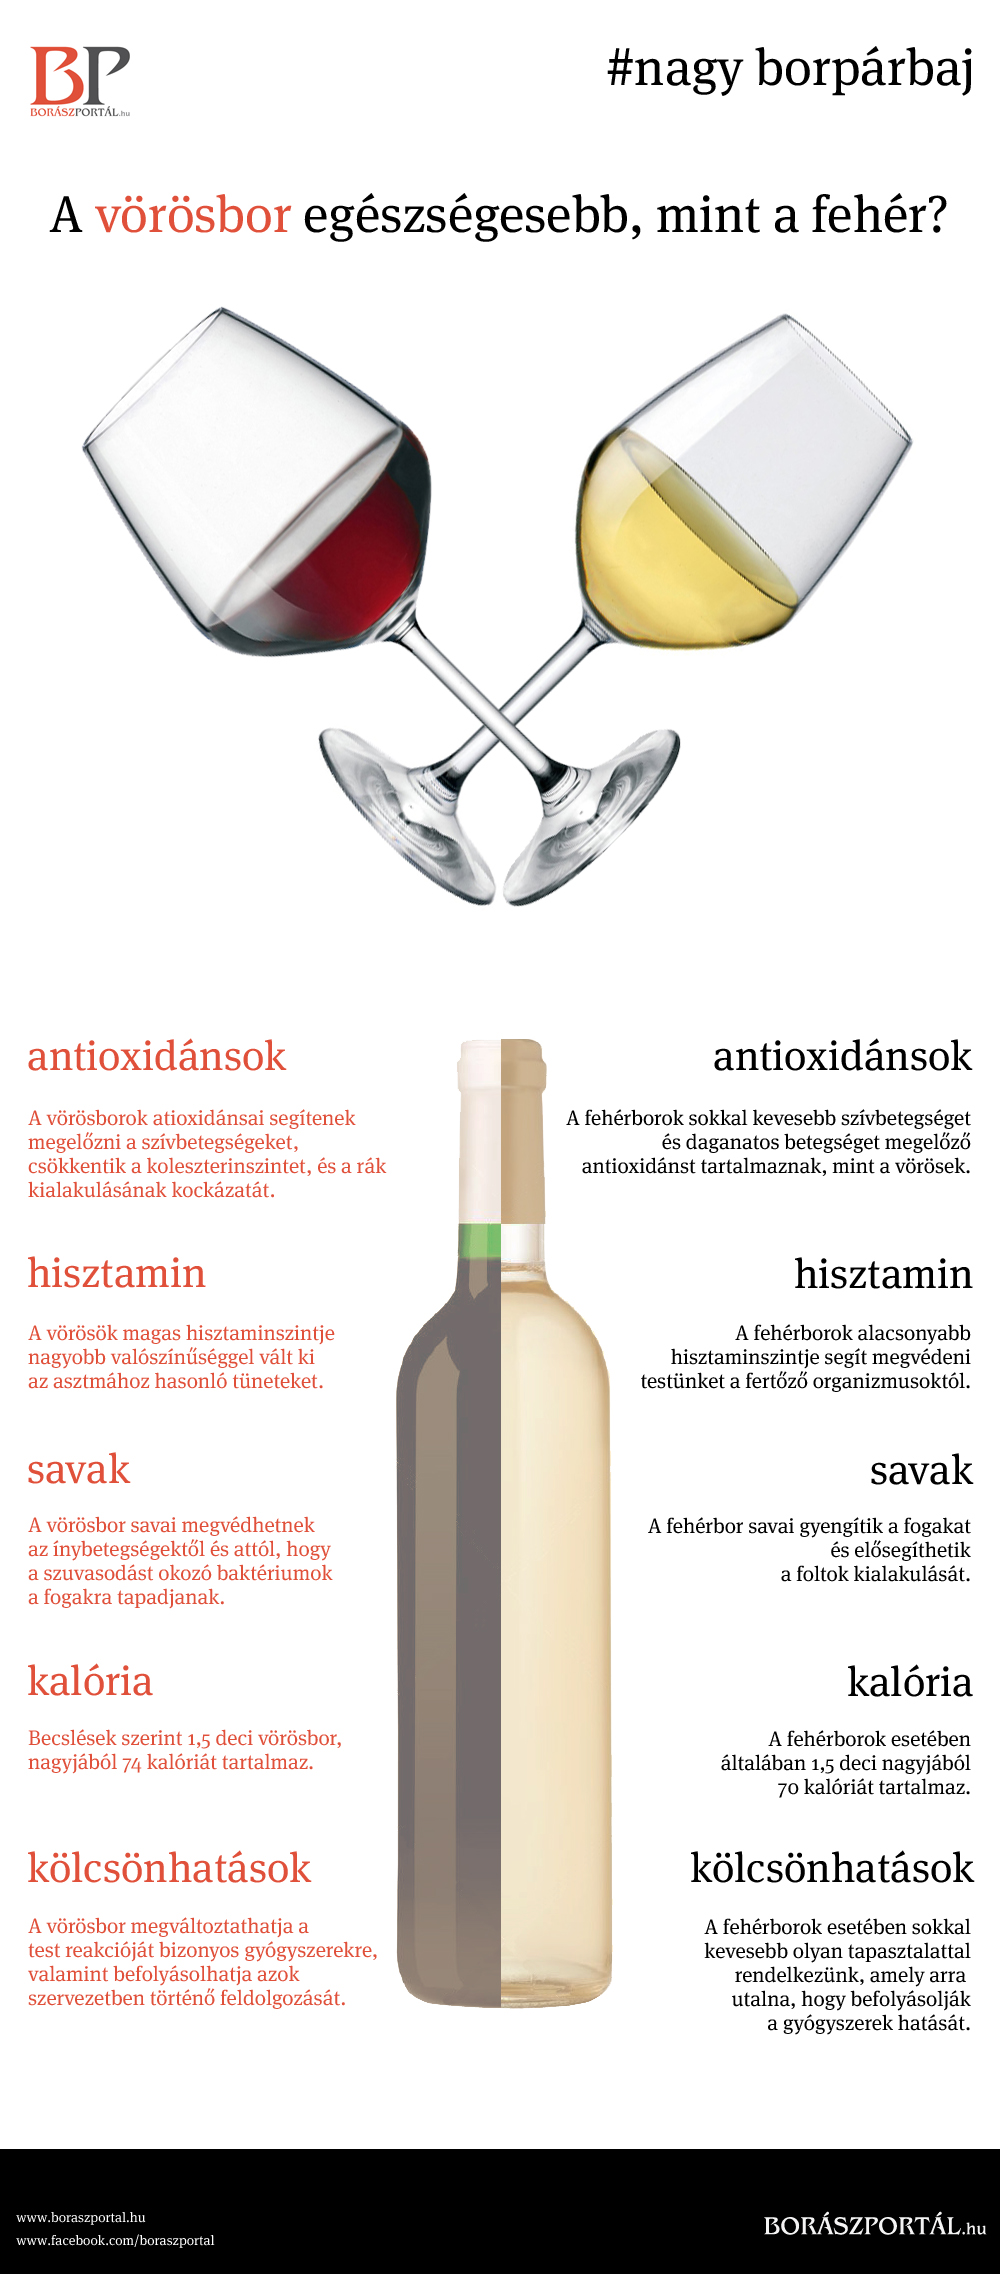 Mi a különbség a vörös és a fehér bor között?